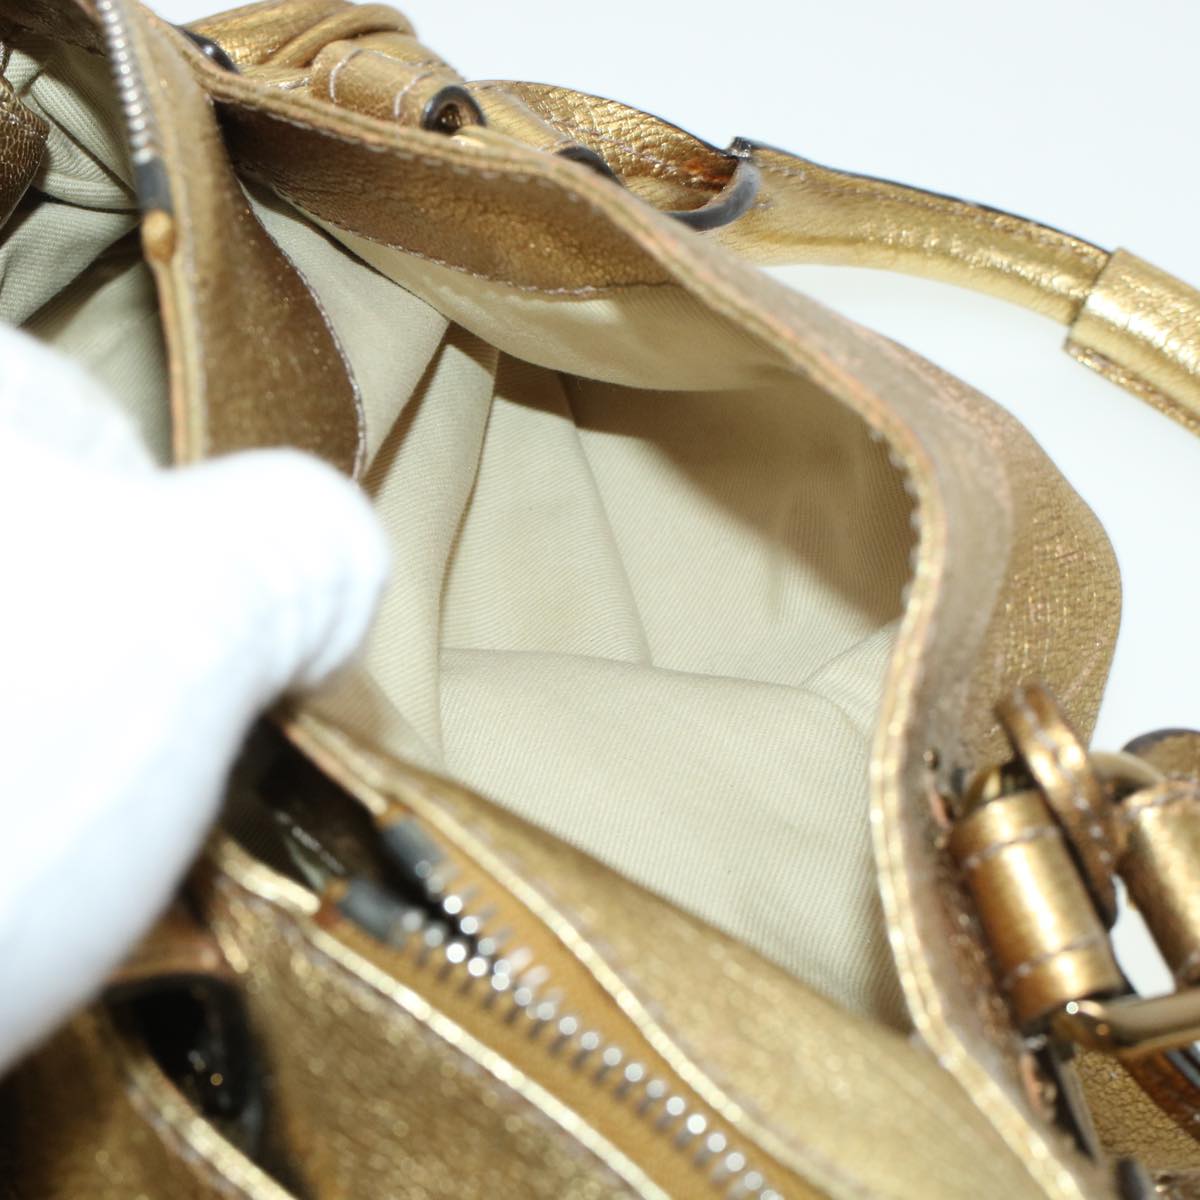 Chloe Paddington Hand Bag Leather Gold 03-09-51-5811 Auth bs5464